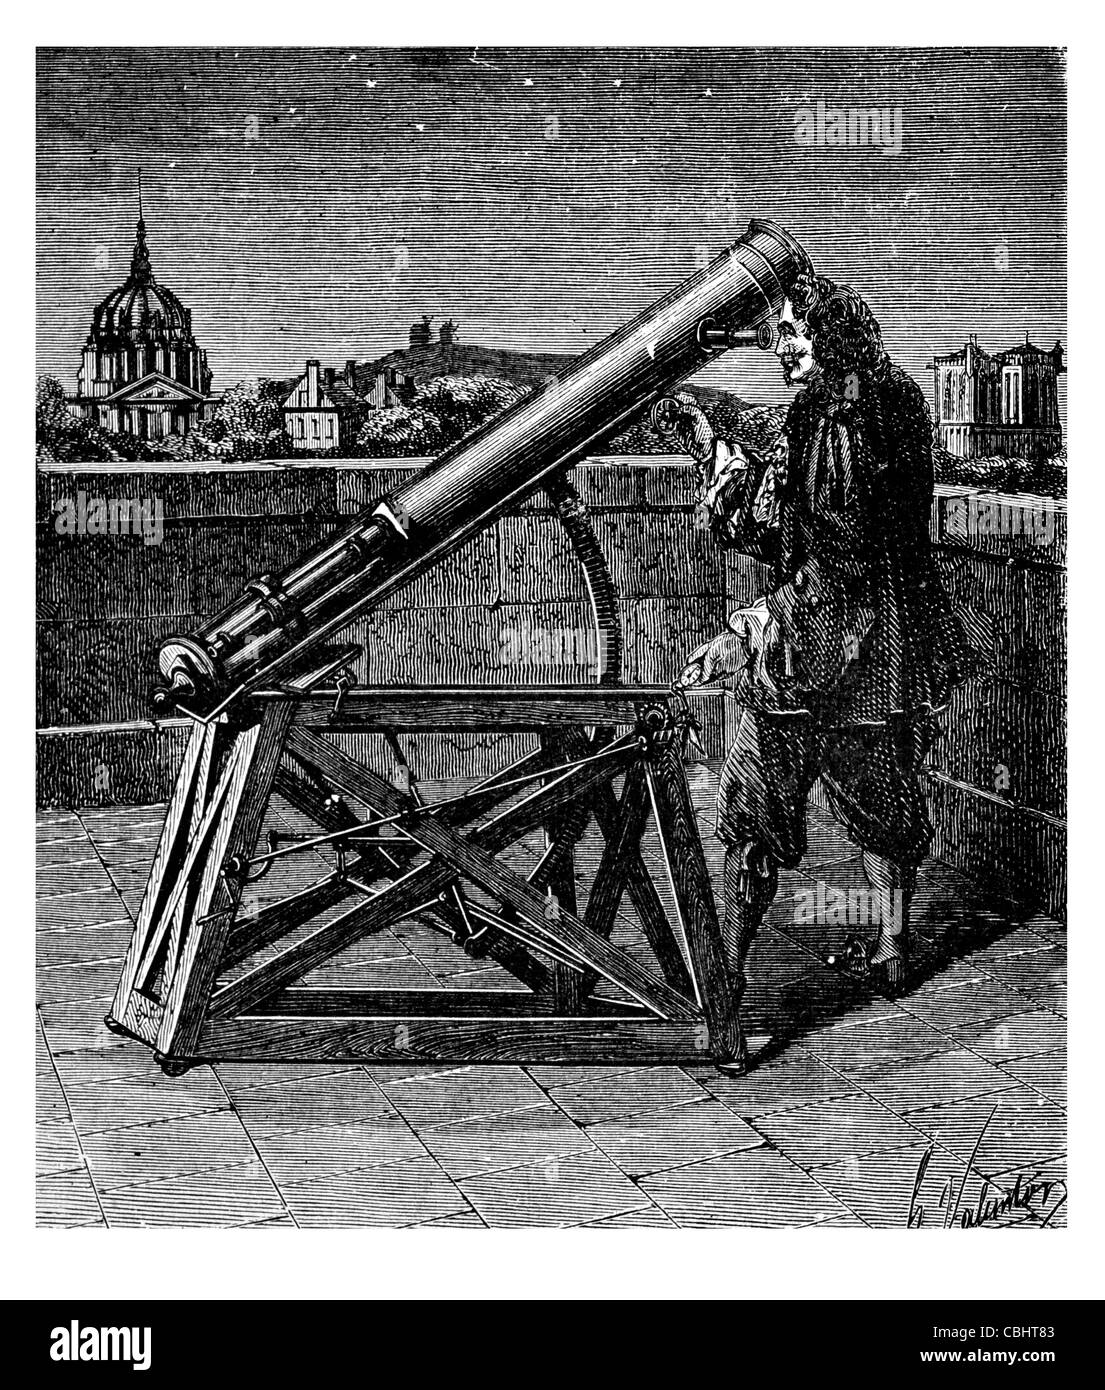 Gregory de télescope télescope optique Astronomie observation sciences Astrologie scientifique naturel celestial astronome stars Banque D'Images